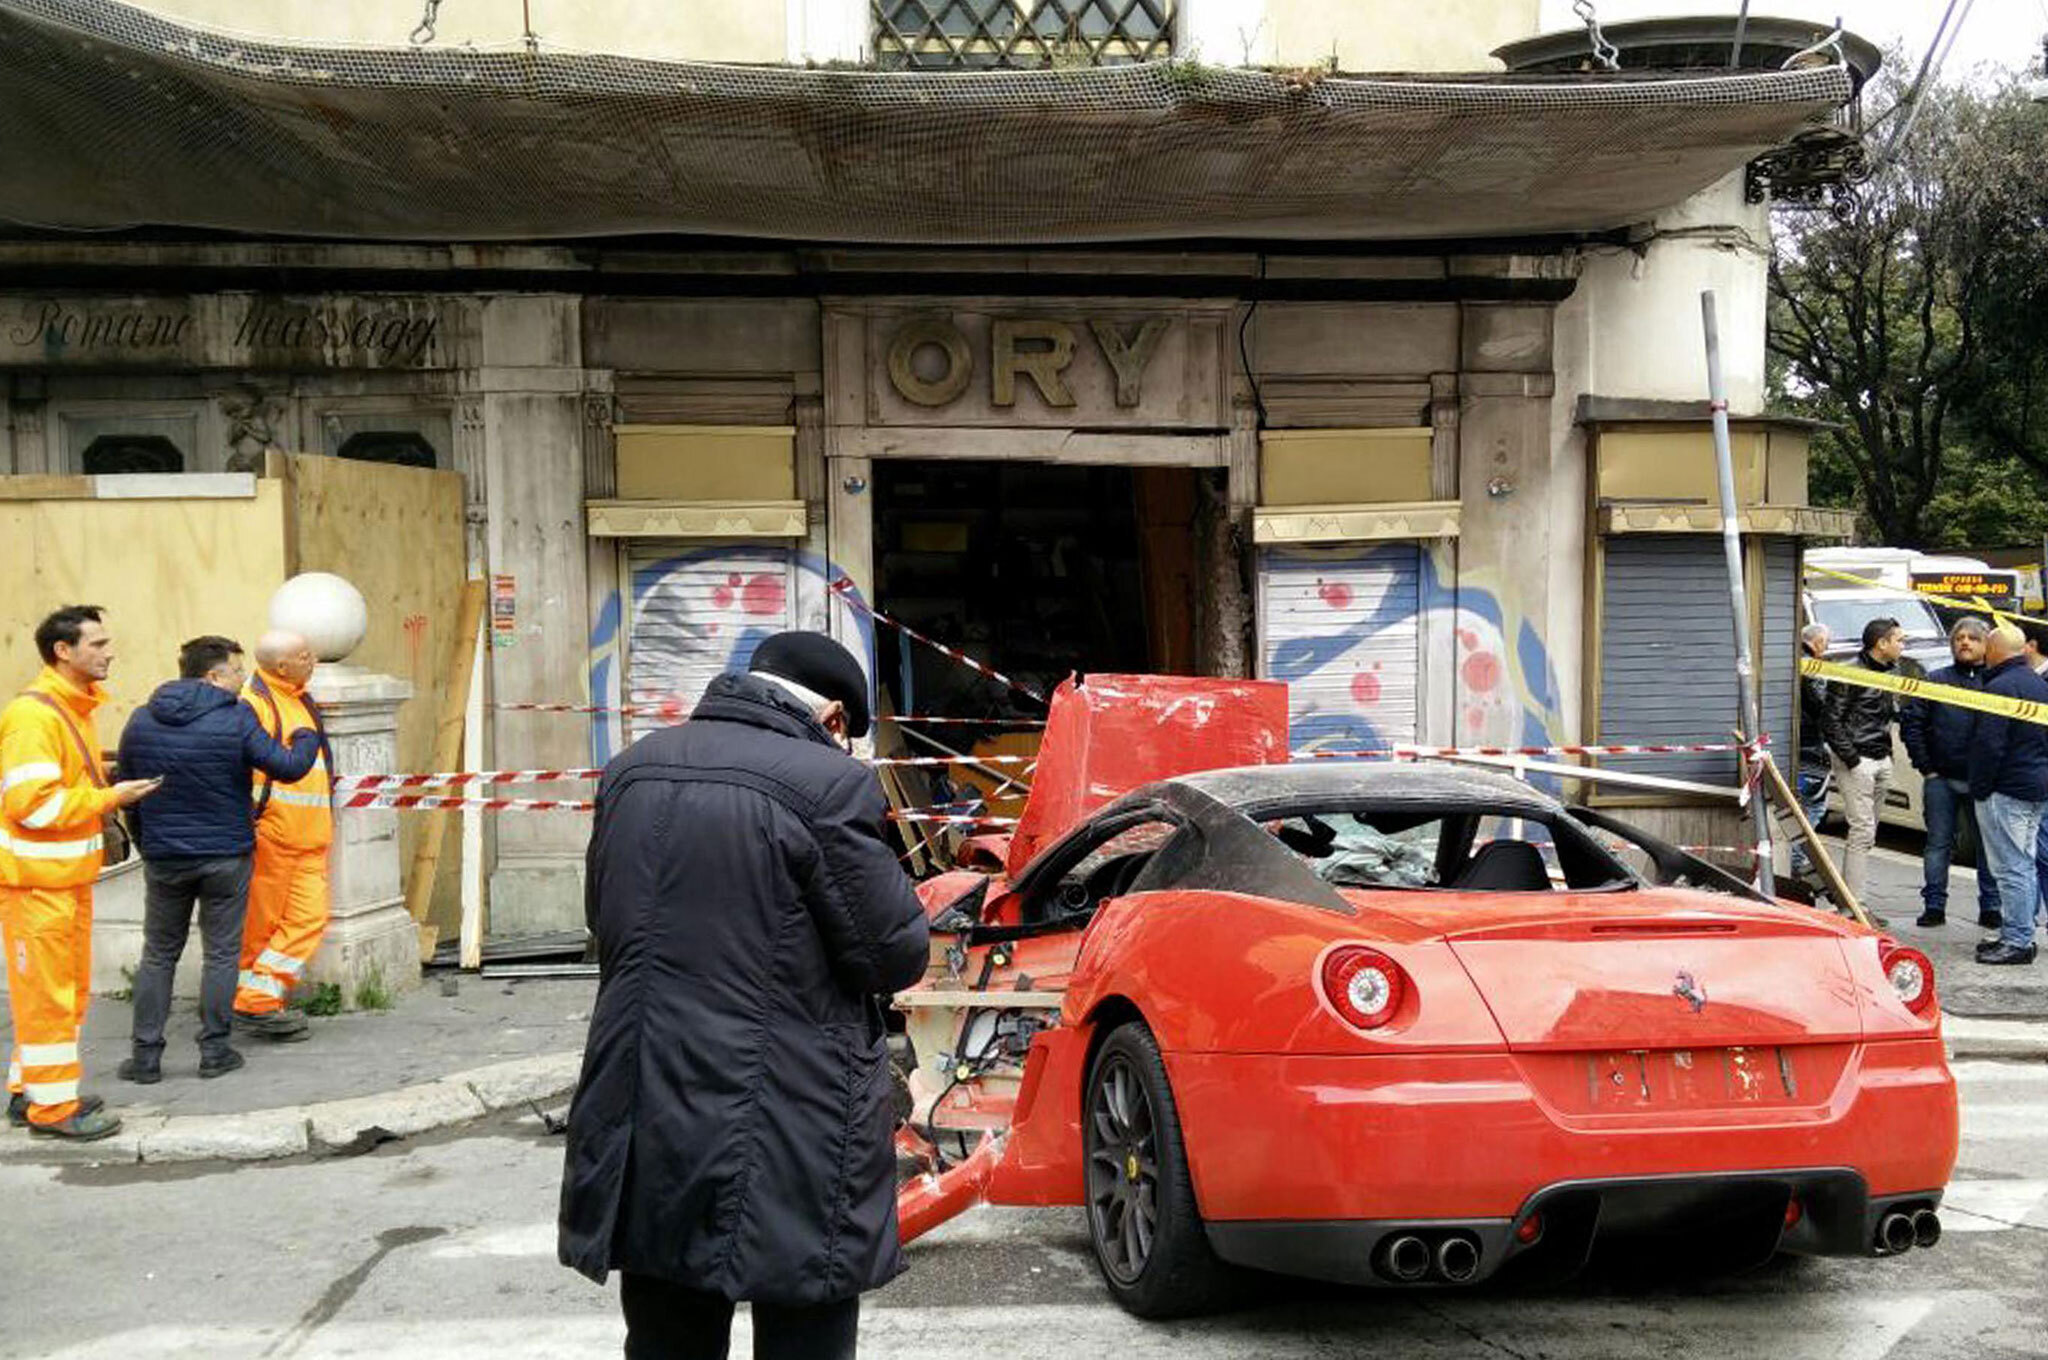 Cотрудник автостоянки случайно разбил Ferrari